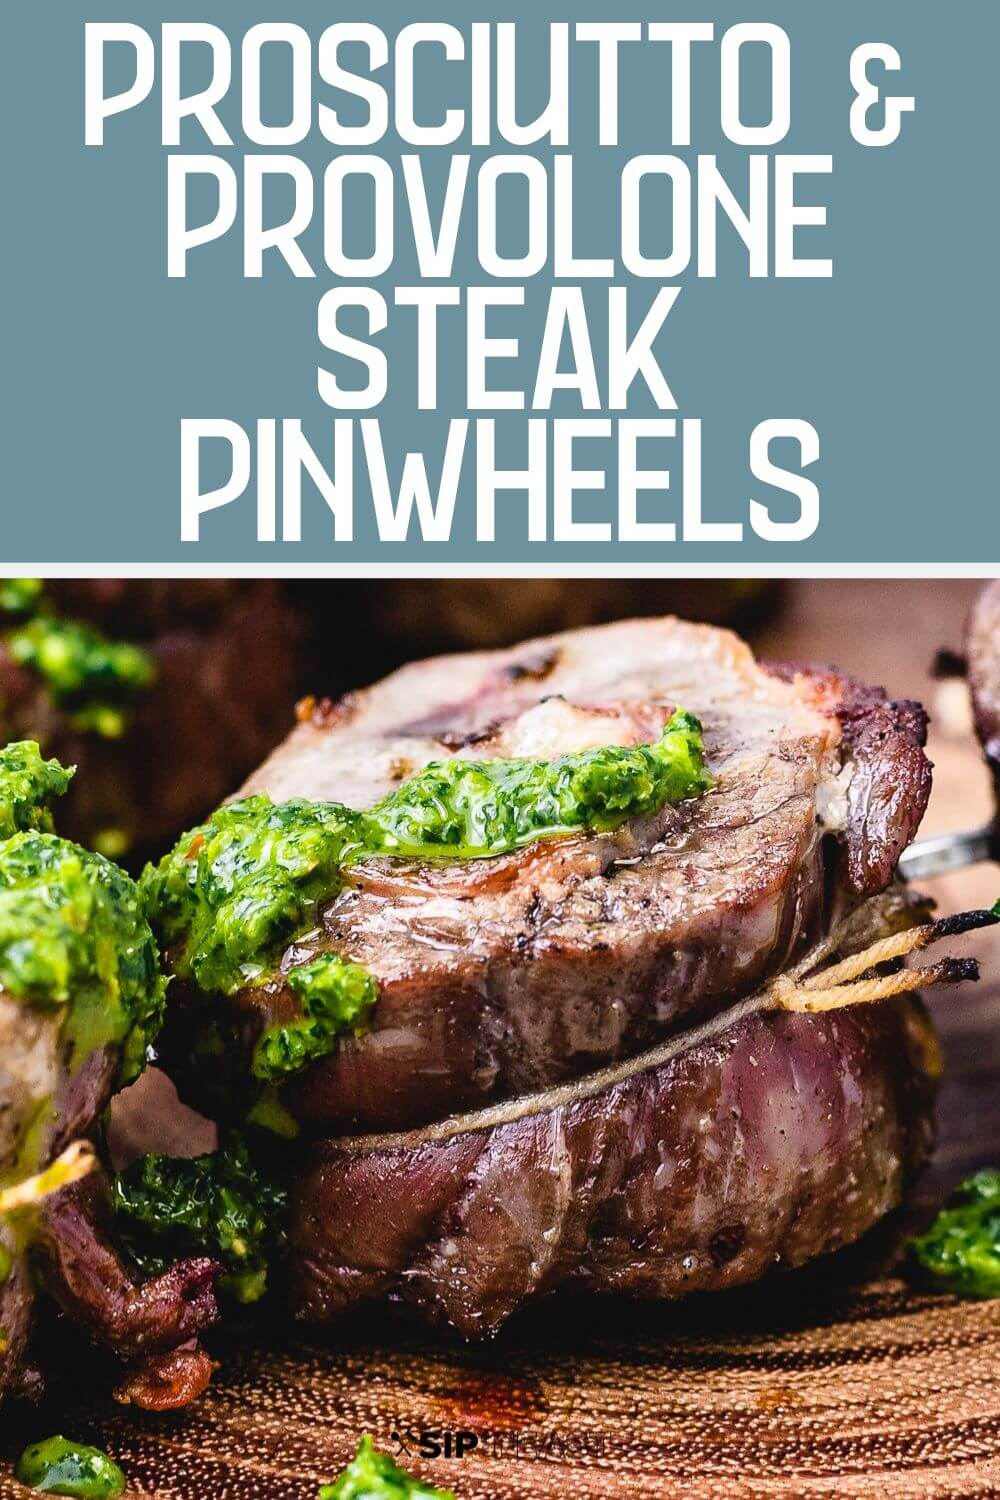 Steak pinwheels Pinterest image.